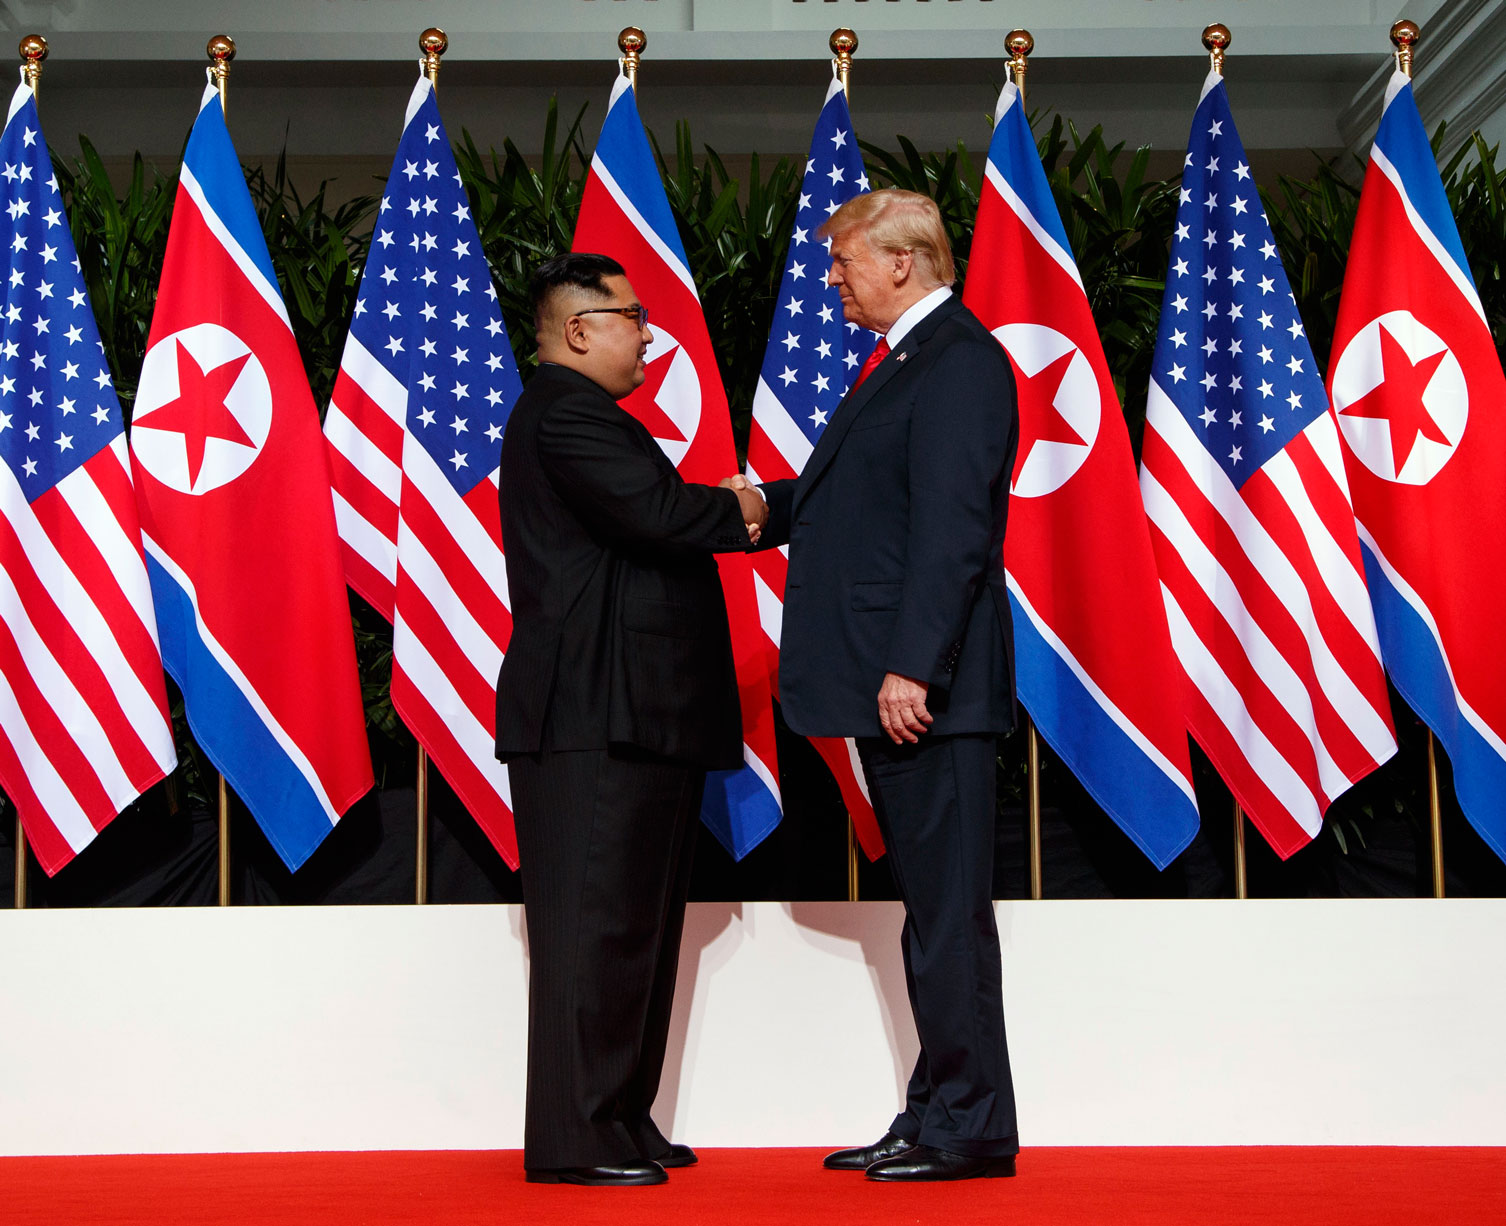 الزعيم الكوري الشمالي كيم جونغ اون في أول لقاء تاريخي مع الرئيس الأميركي دونالد ترامب